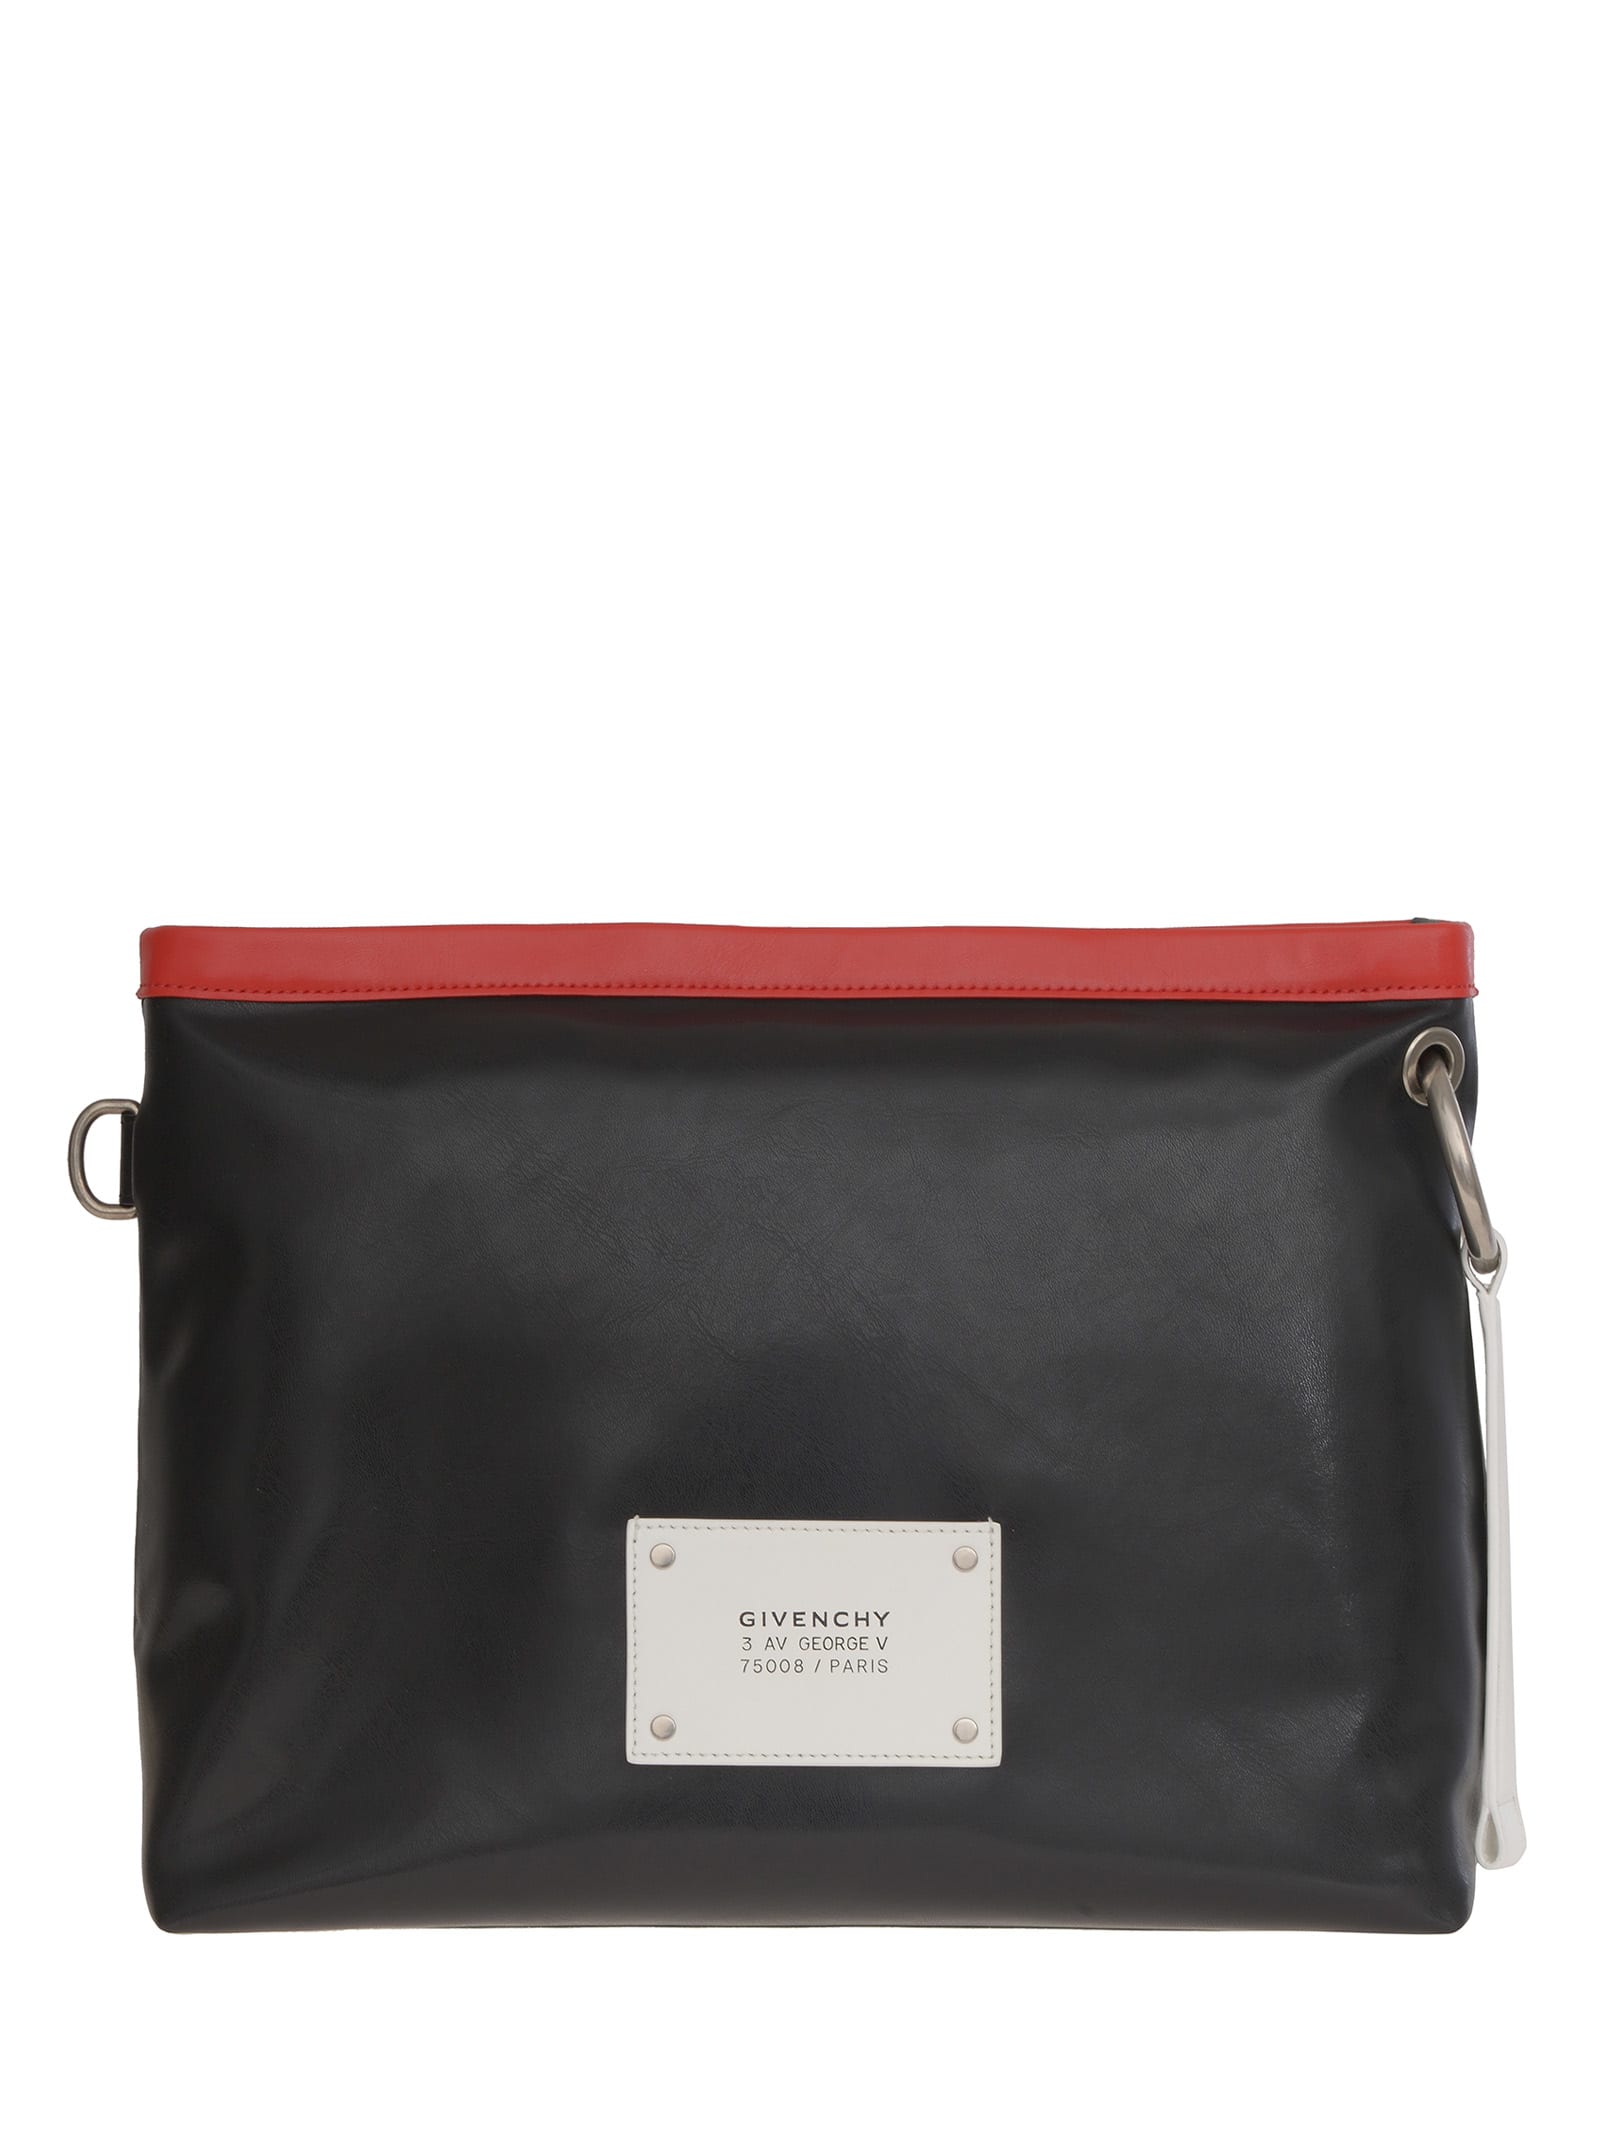 Givenchy Tag Shoulder Bag In Black/red